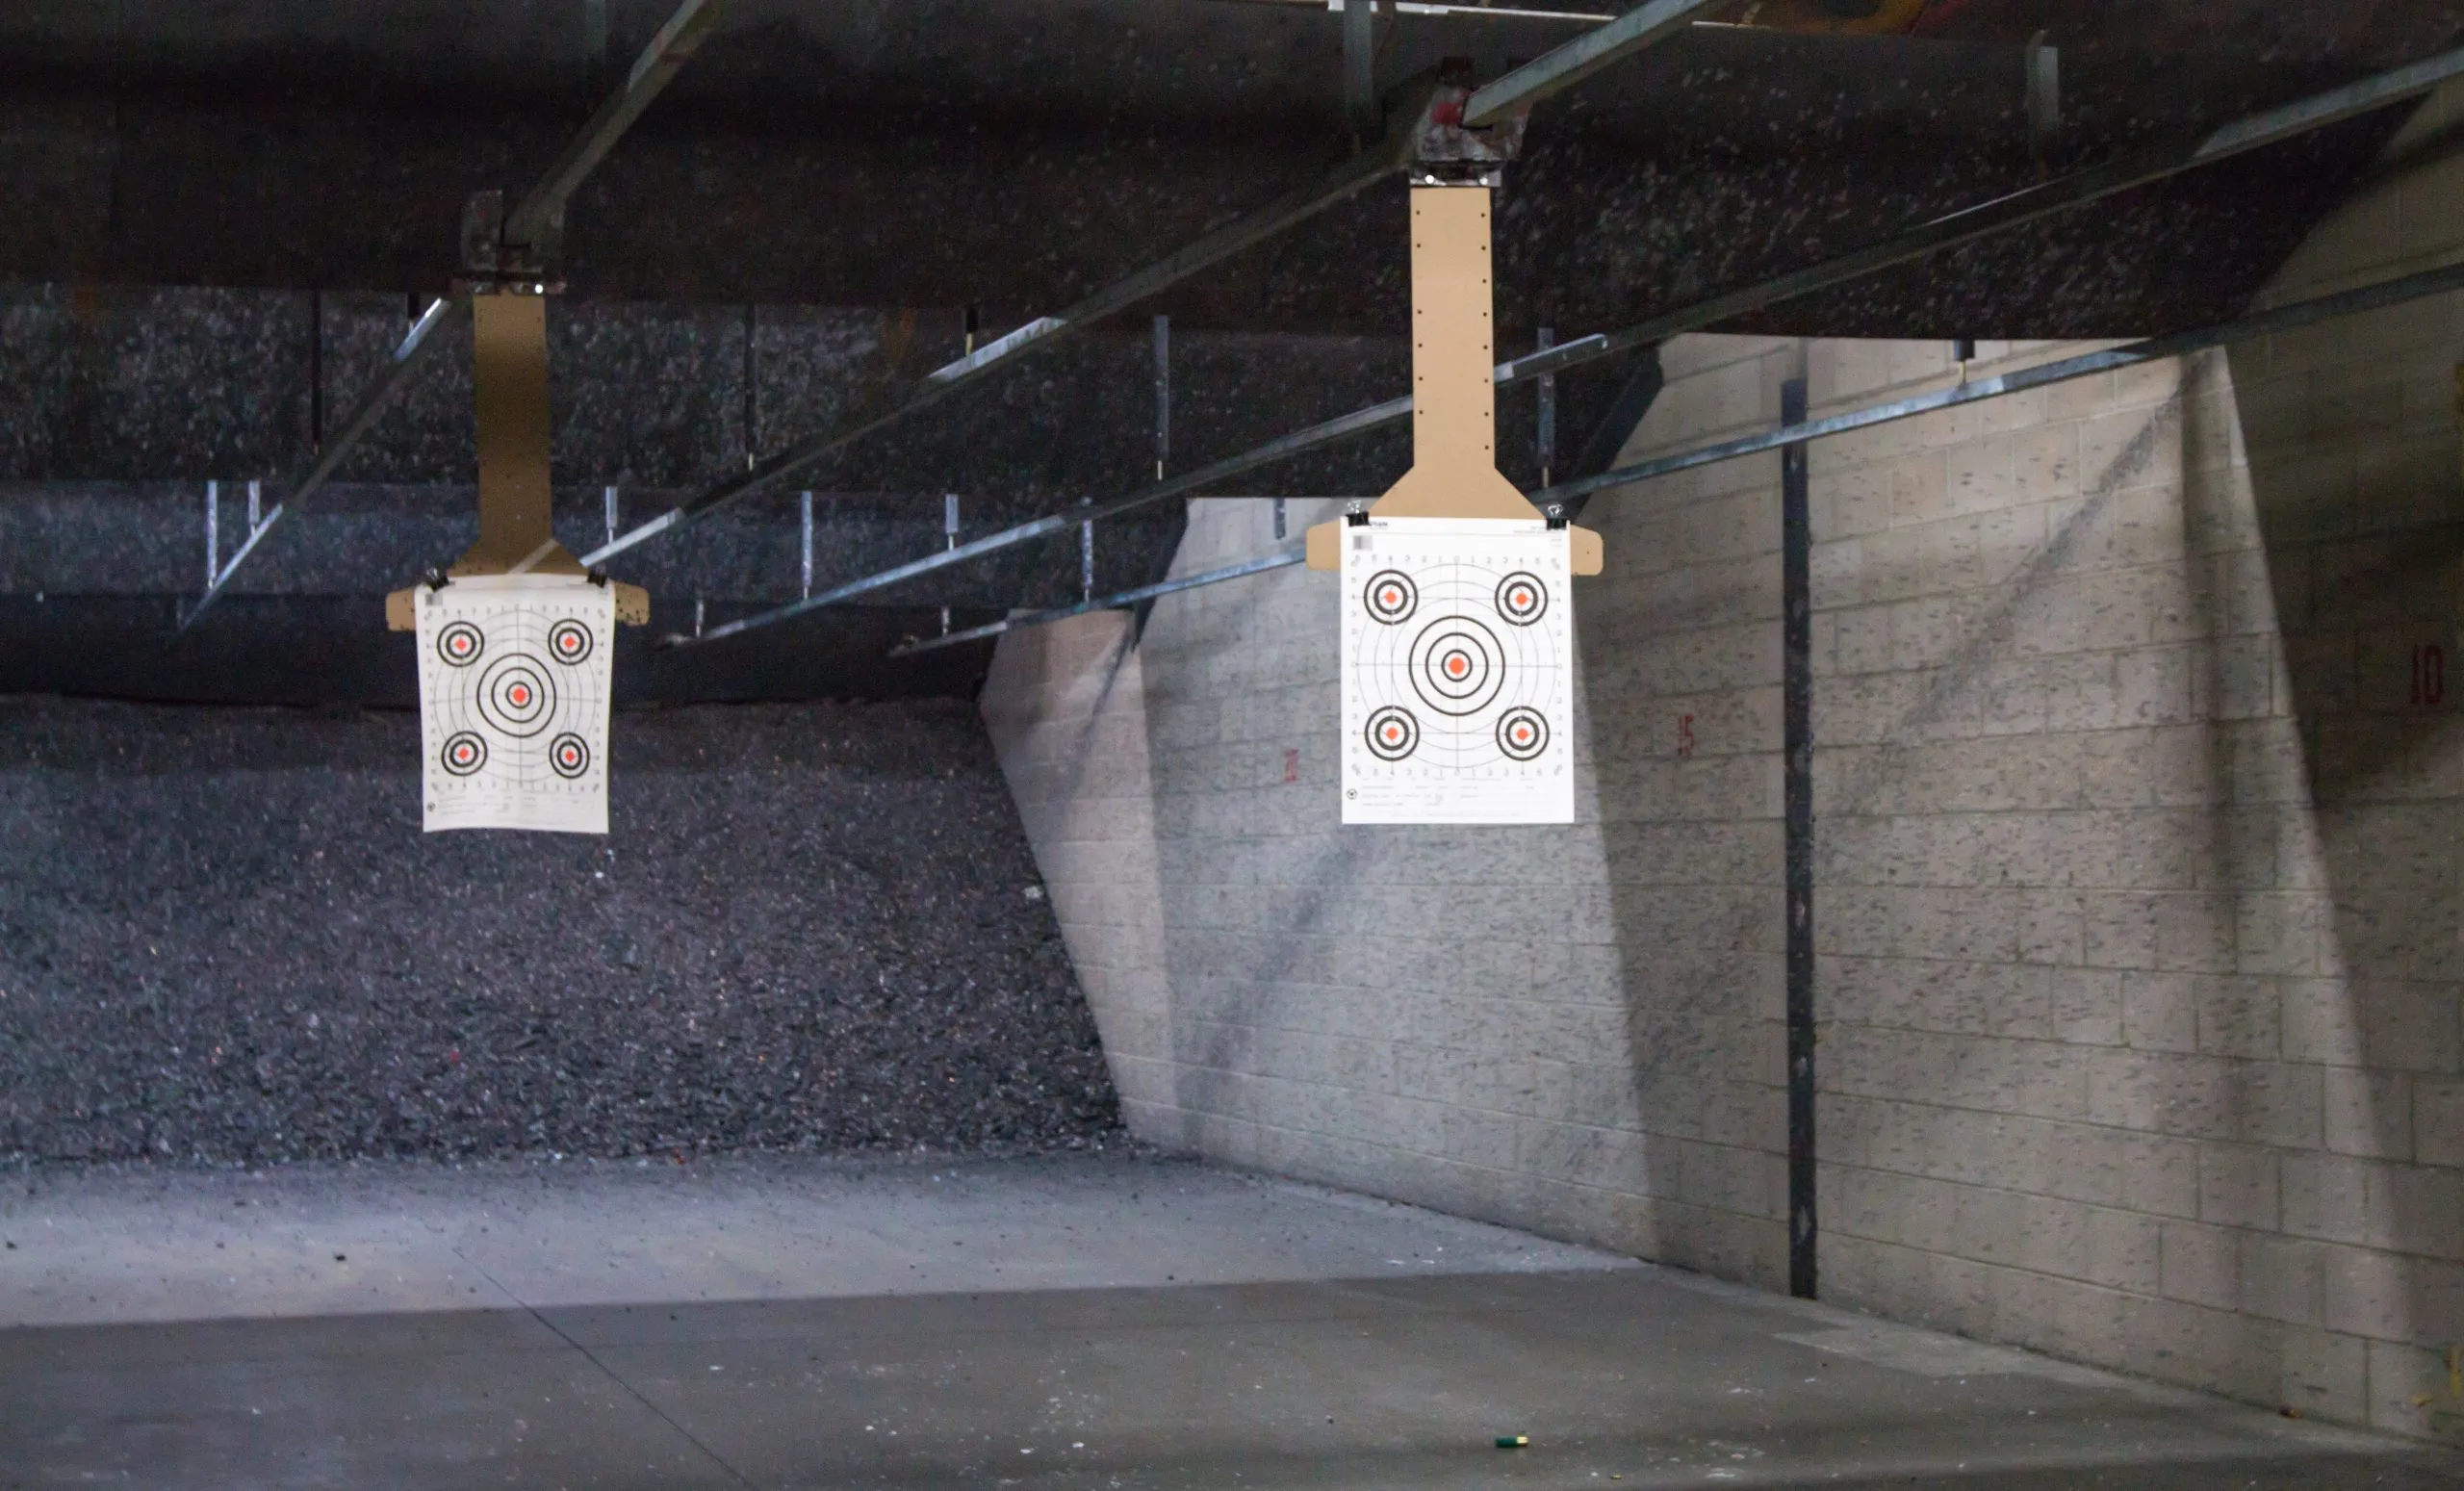 Target rows at a shooting range.